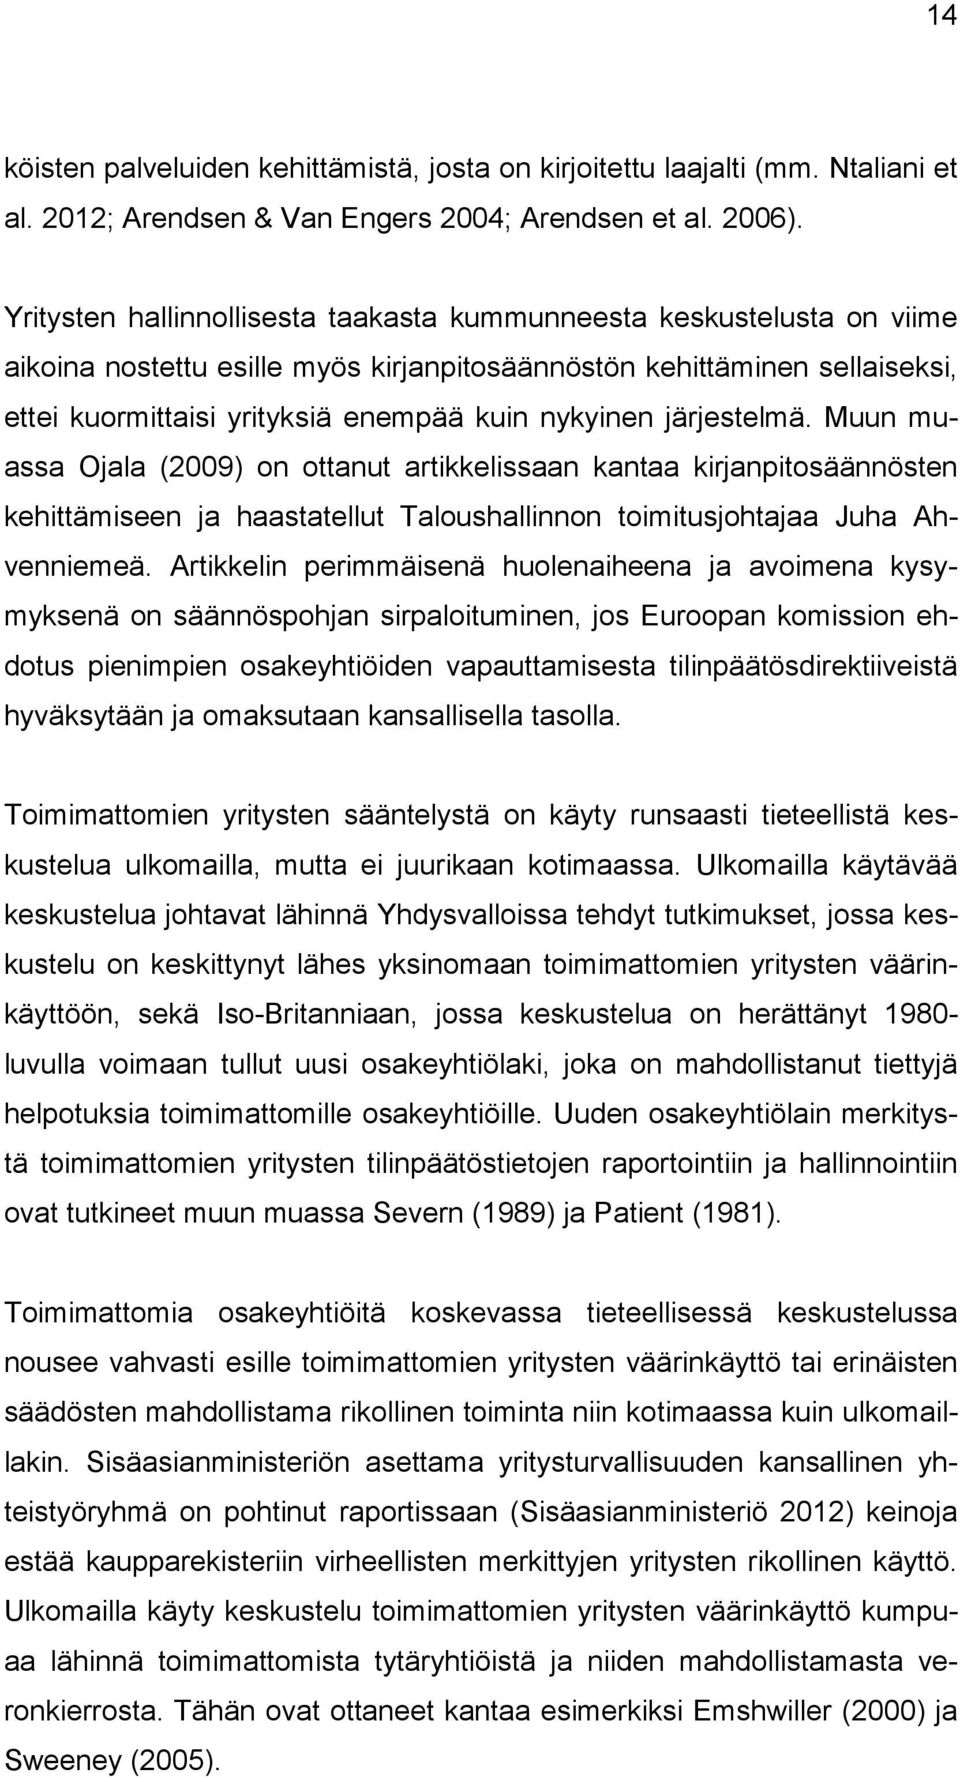 järjestelmä. Muun muassa Ojala (2009) on ottanut artikkelissaan kantaa kirjanpitosäännösten kehittämiseen ja haastatellut Taloushallinnon toimitusjohtajaa Juha Ahvenniemeä.